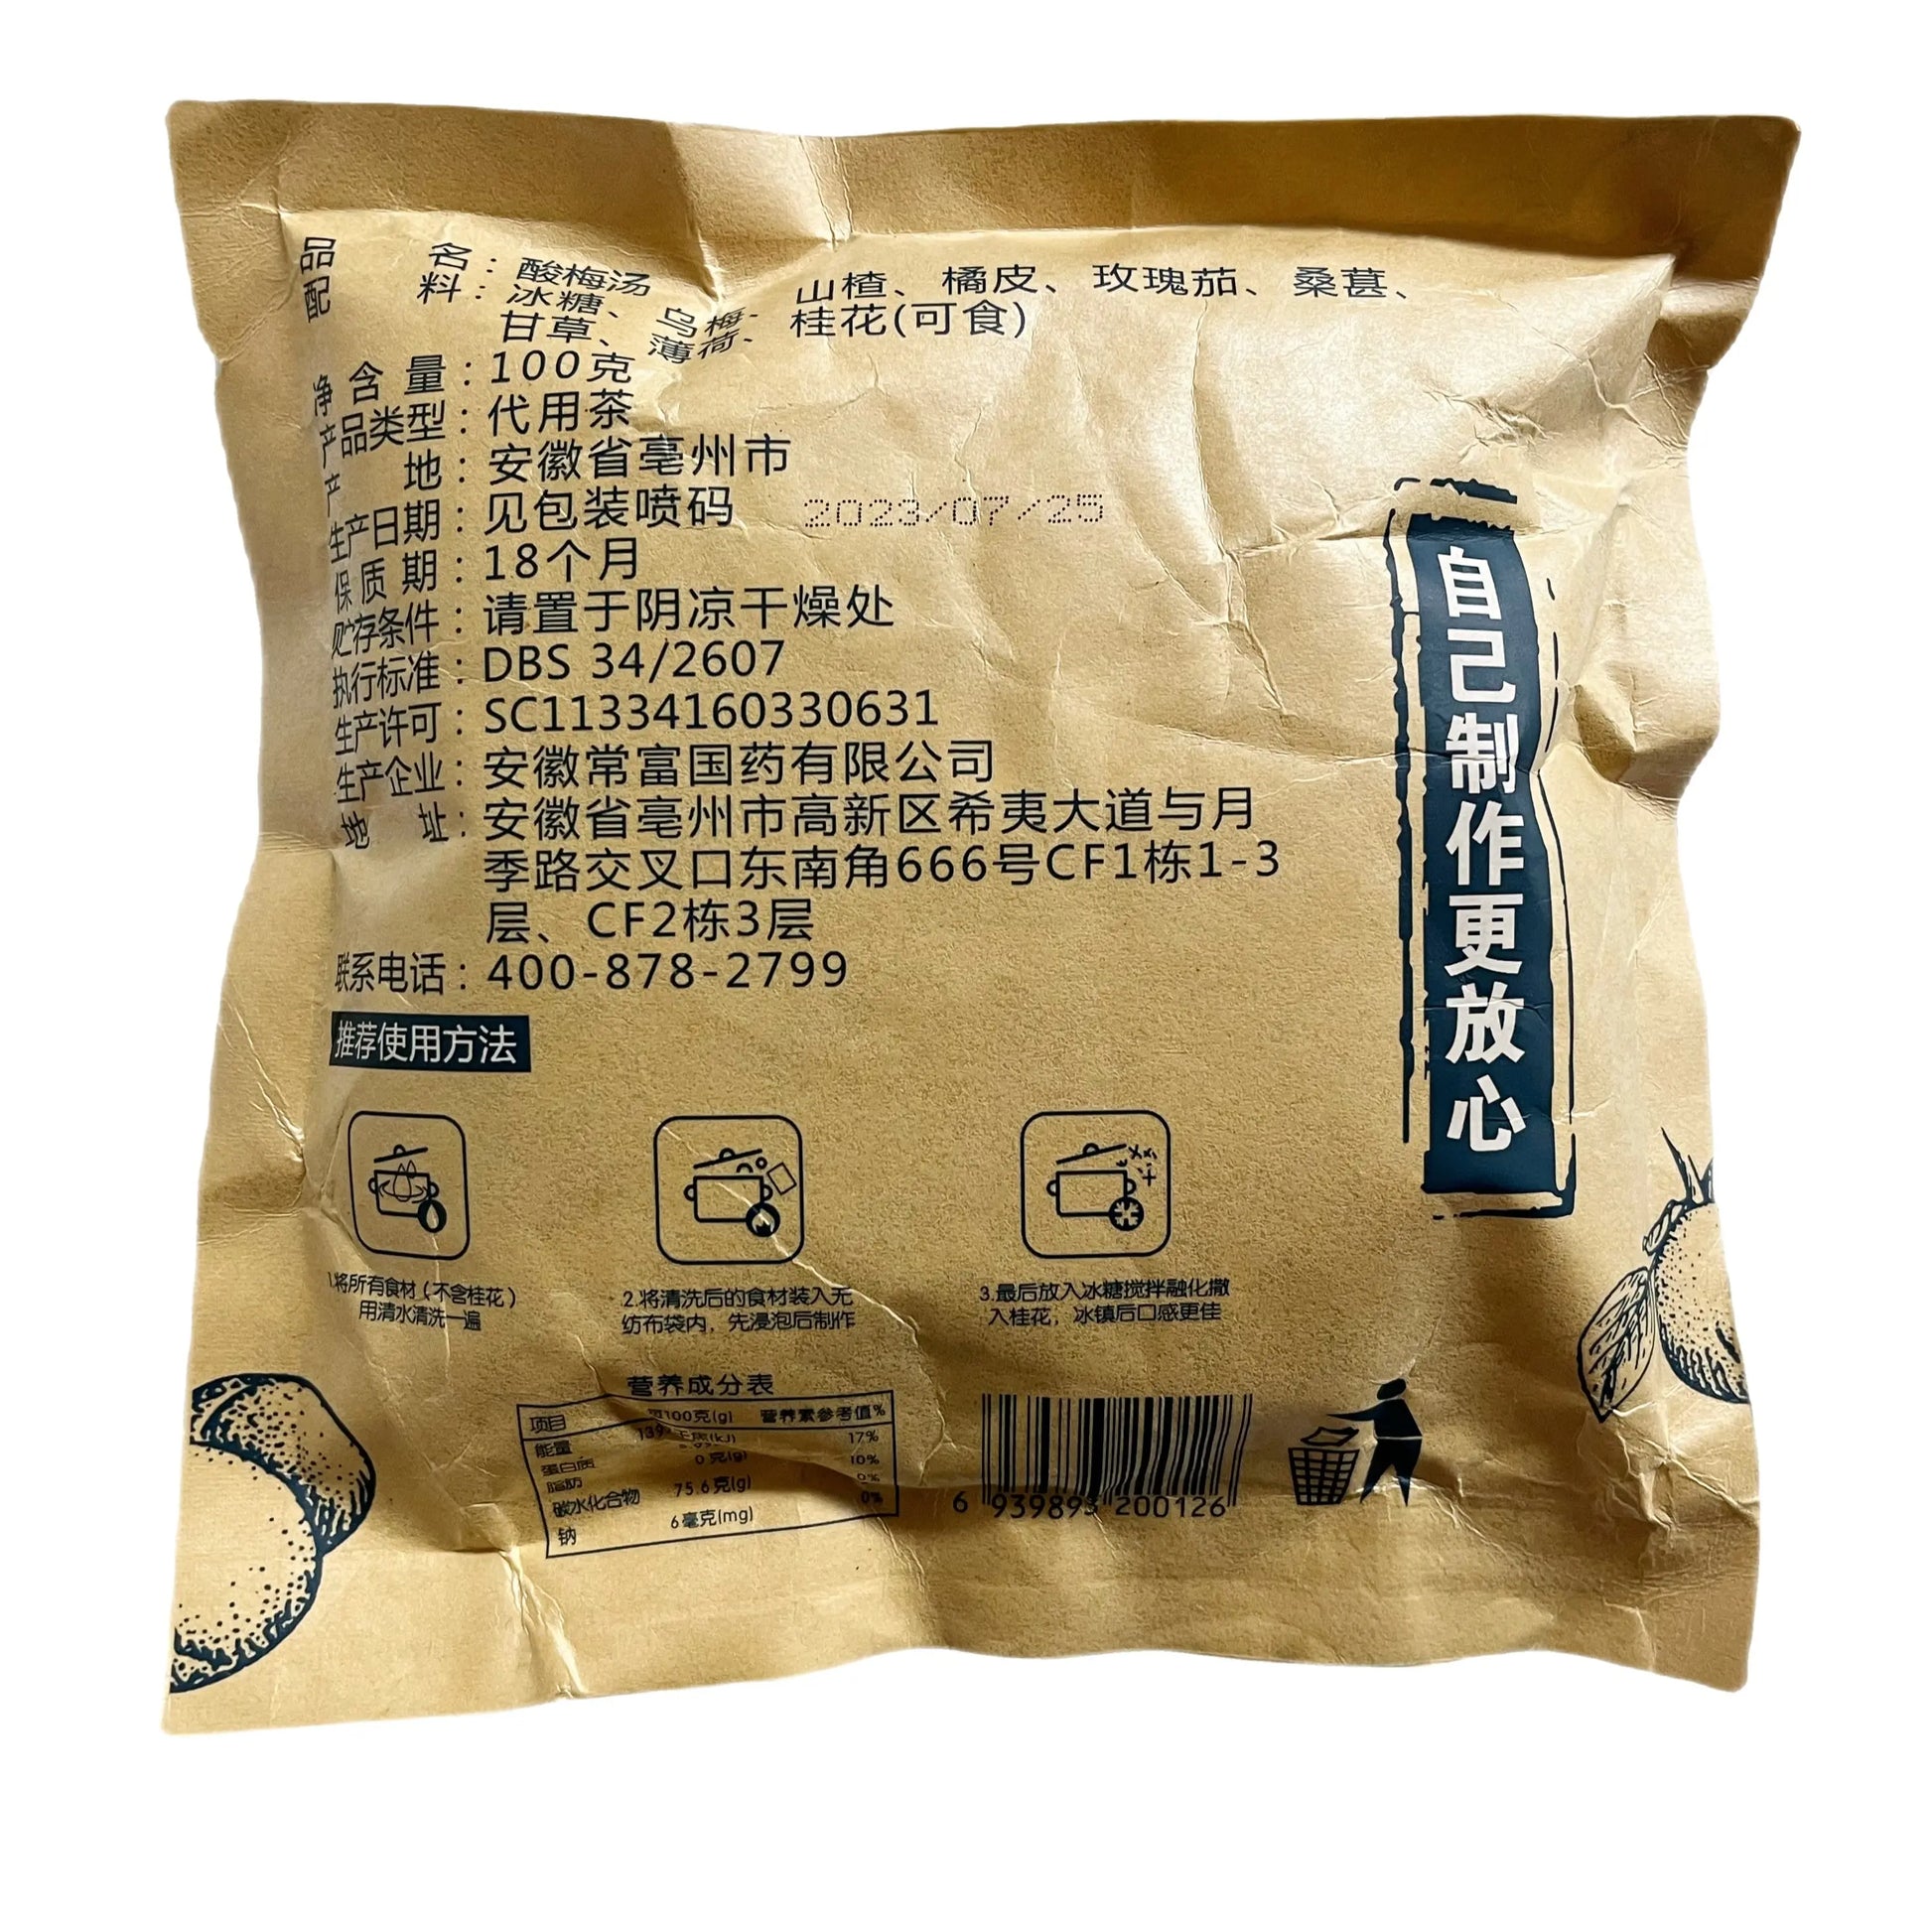 老北京酸梅汤原料包100克传统古法9种精造原材料含冰糖方便健康解暑、开胃、抗疲劳等 安徵常富国药有限公司